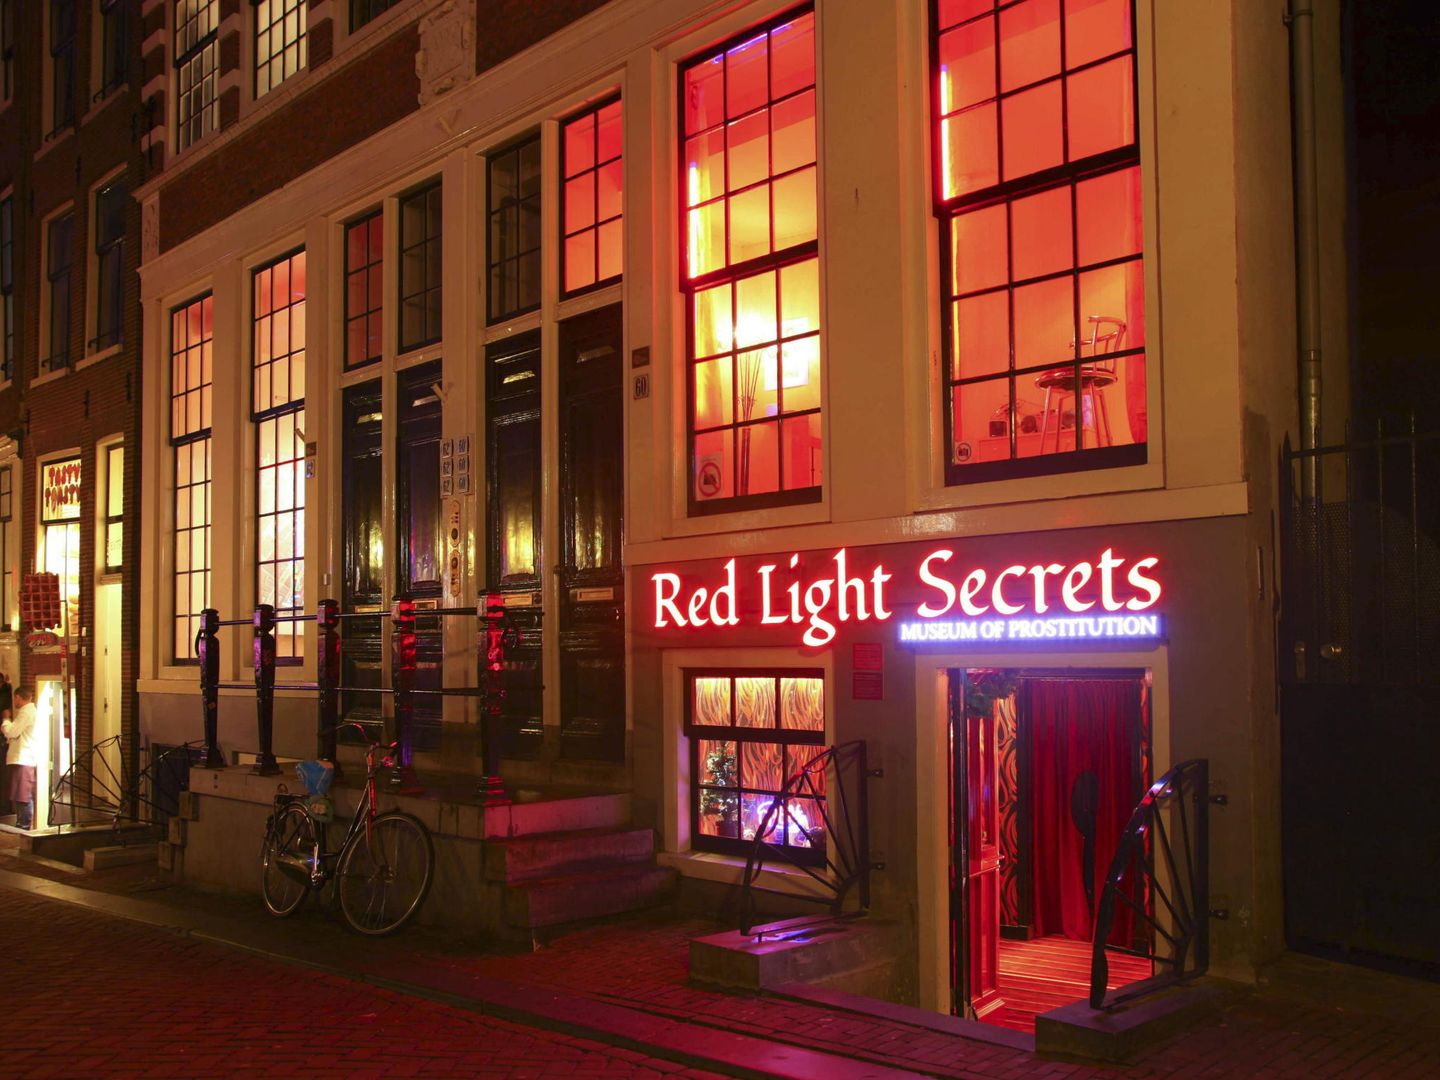 El Barrio Rojo de Ámsterdam cuenta con un museo de la prostitución. (Efe)